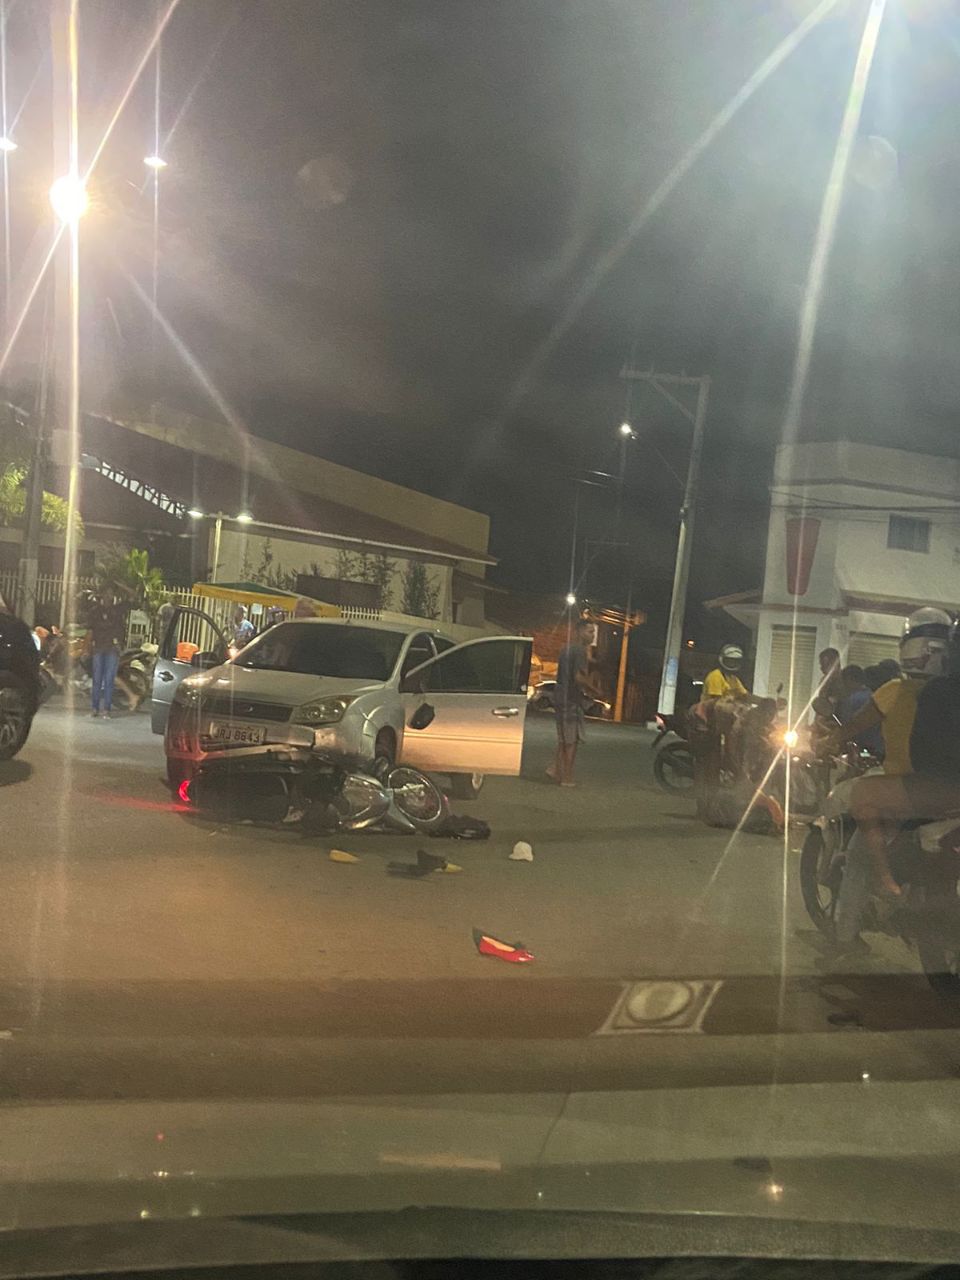 SAJ: moto vai parar embaixo de carro após colisão no São Benedito